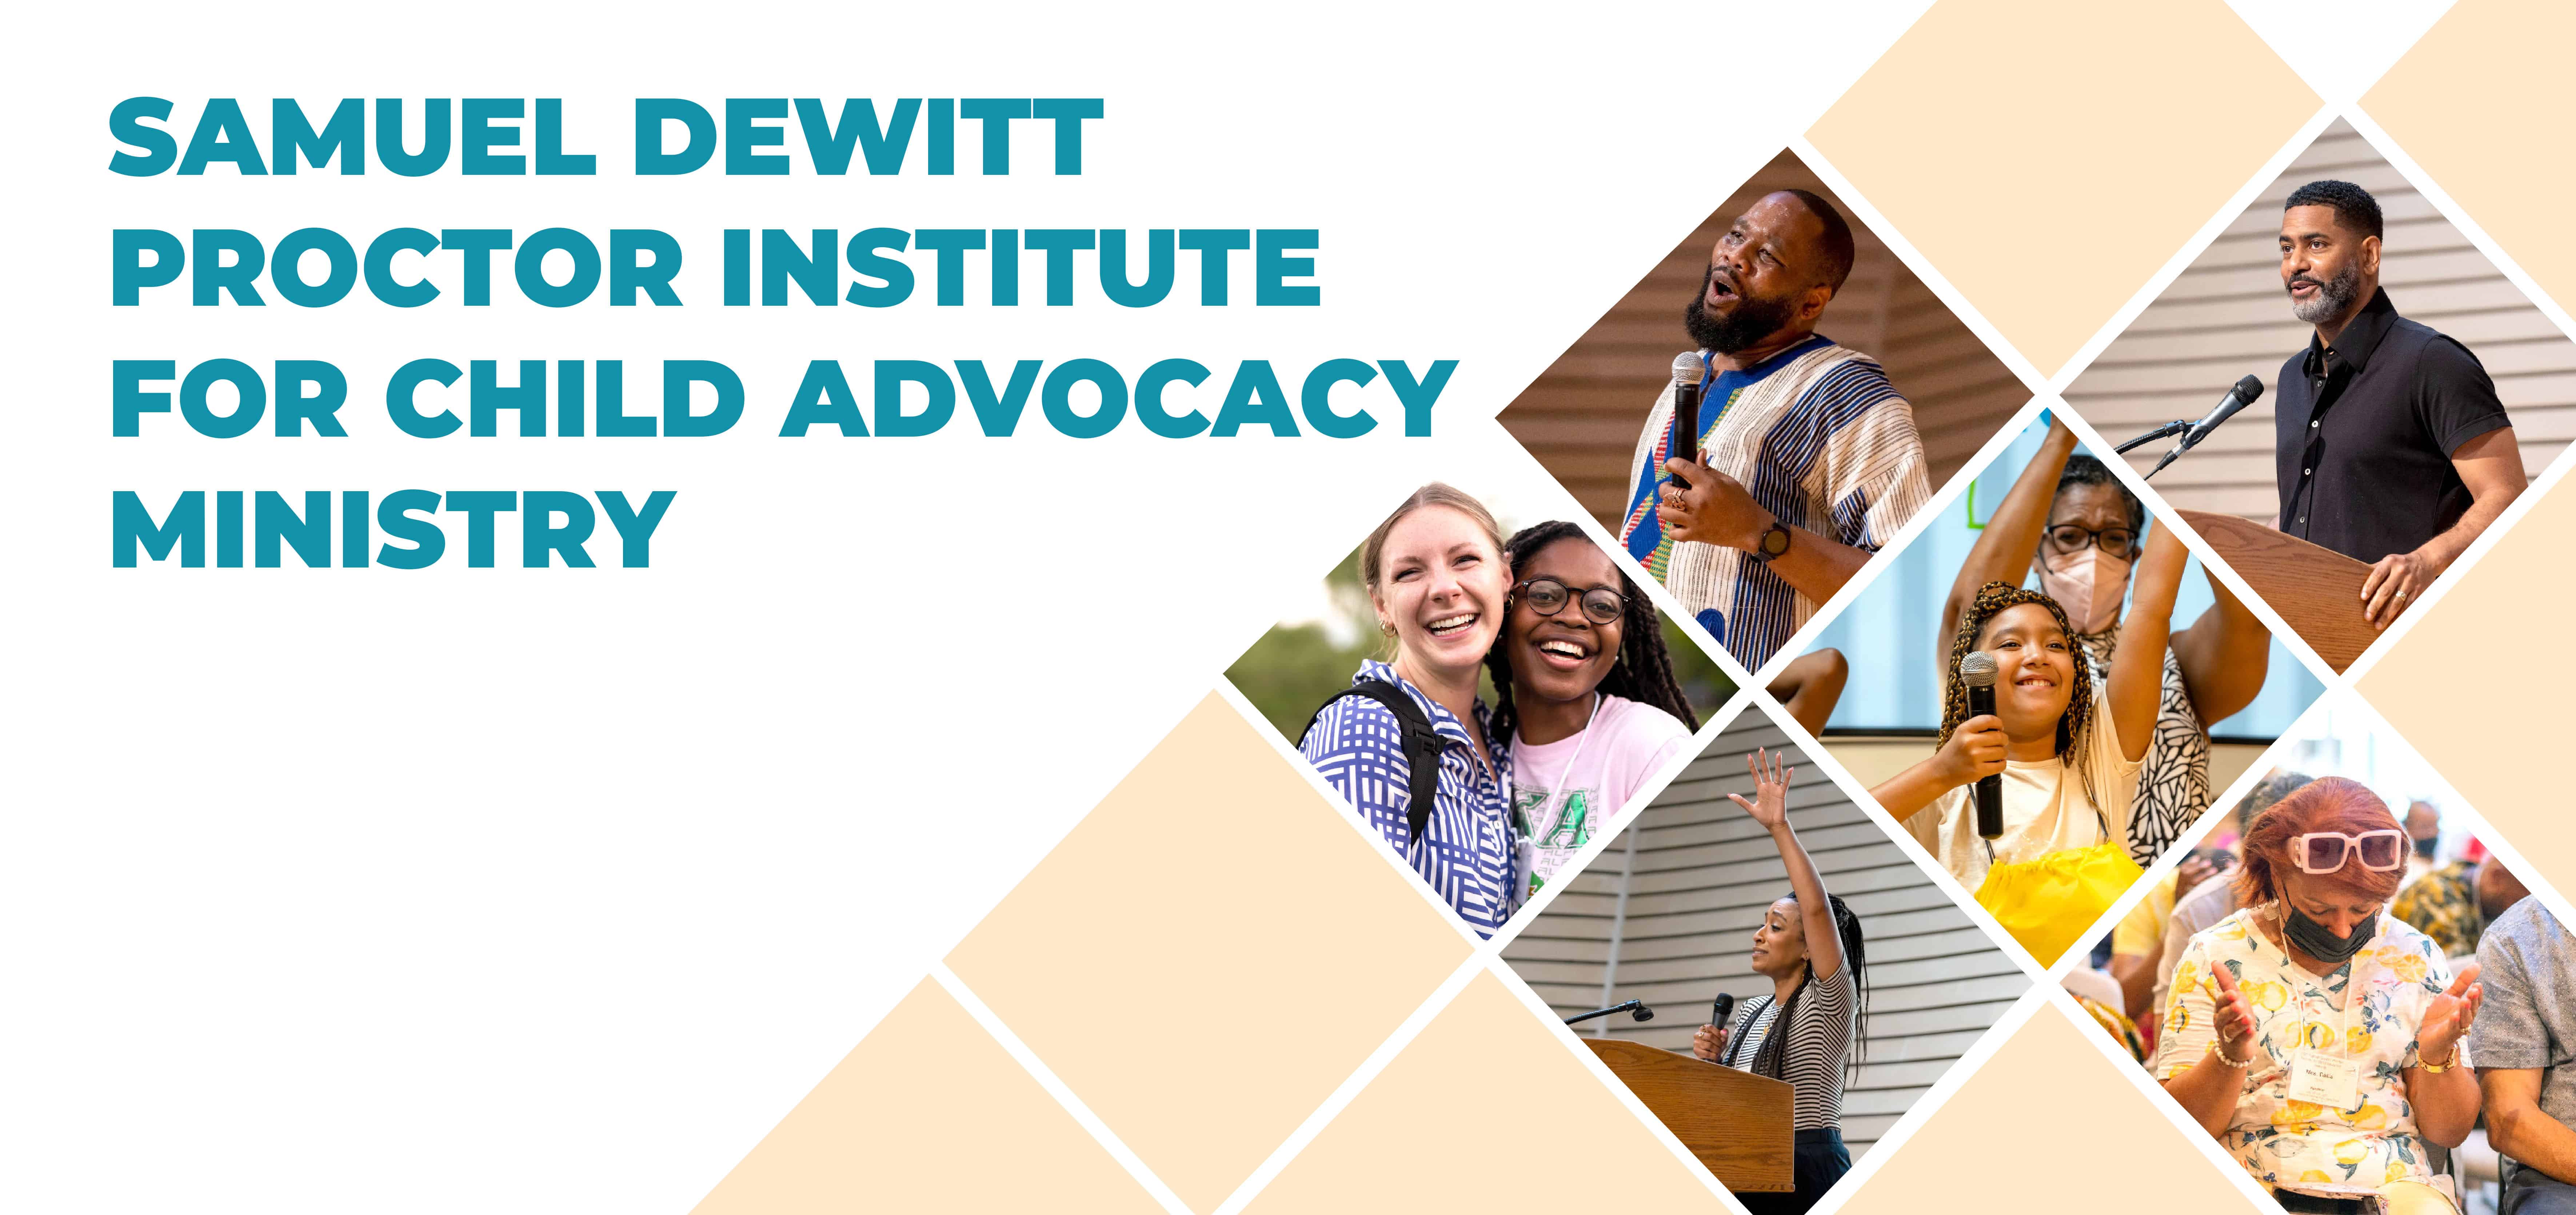 Samuel DeWitt Proctor Institute for Child Advocacy